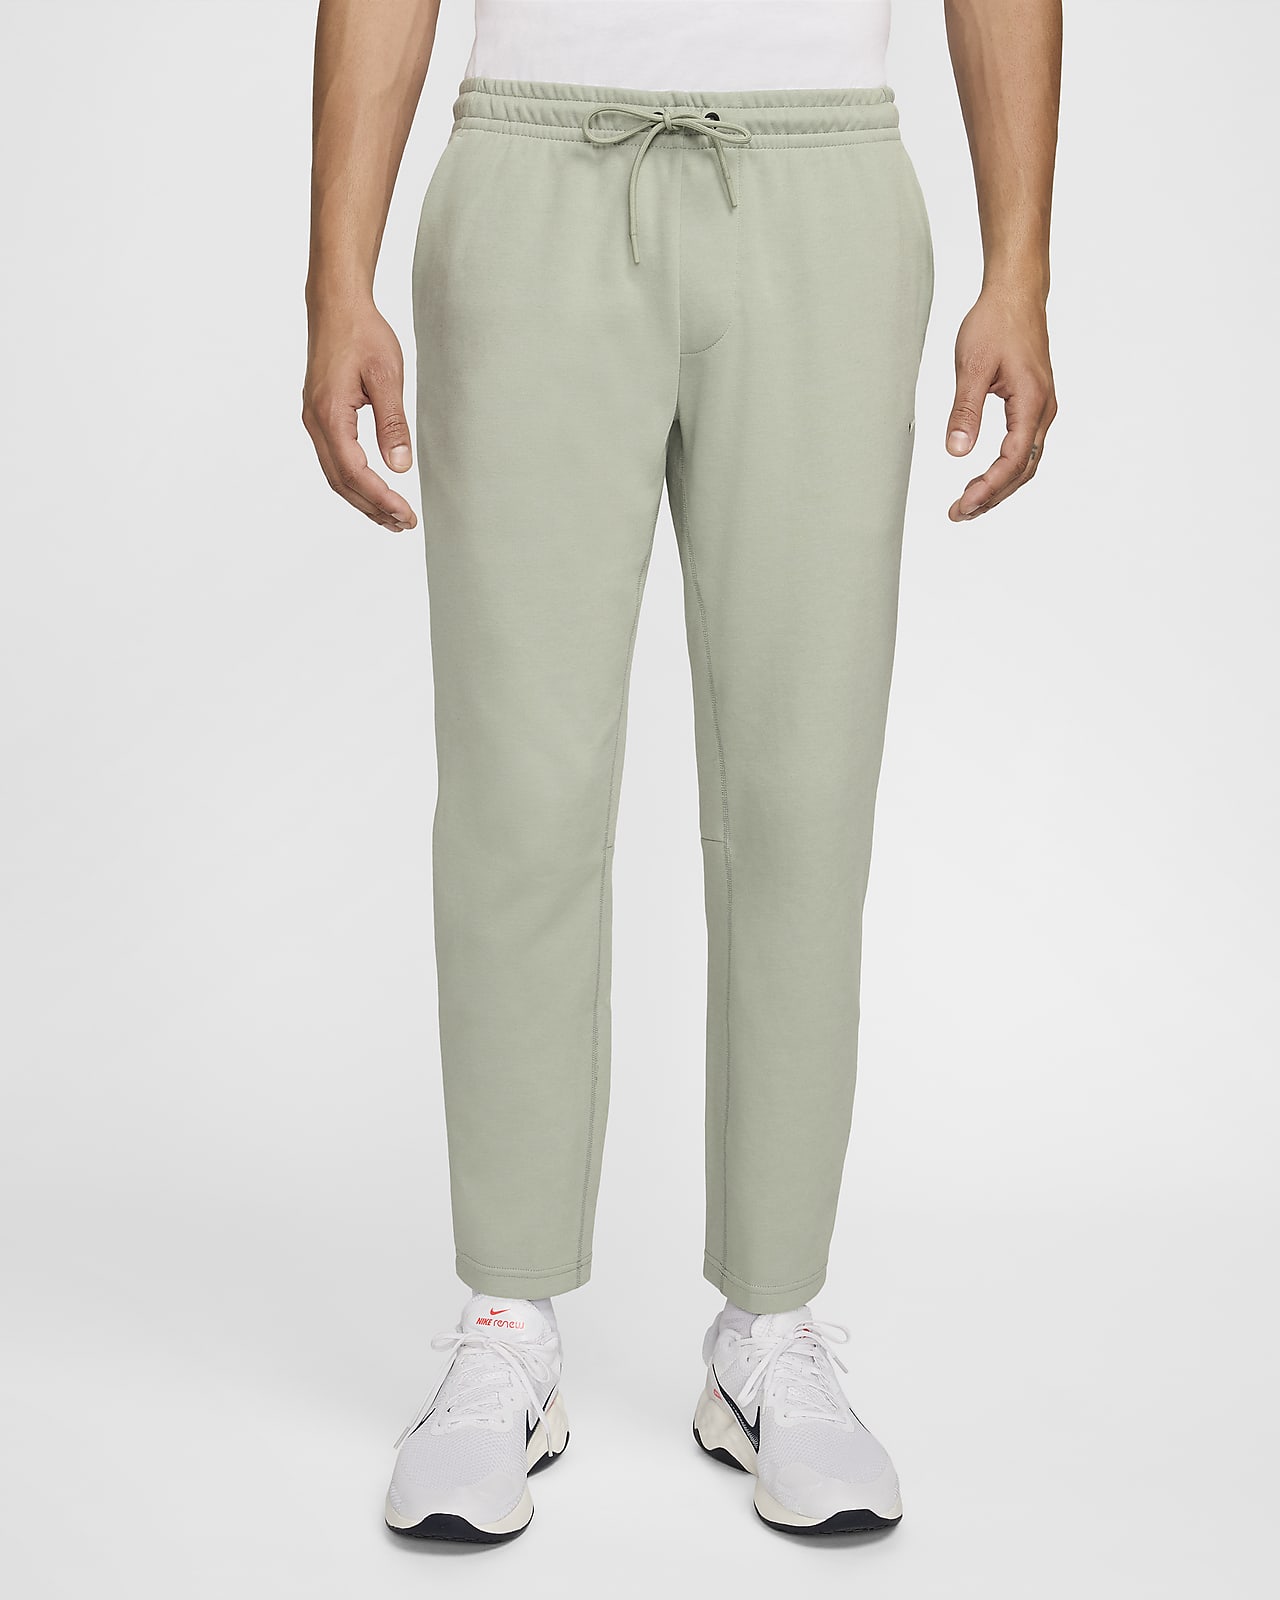 Pants Dri-FIT entallados versátiles con protección UV para hombre Nike Primary